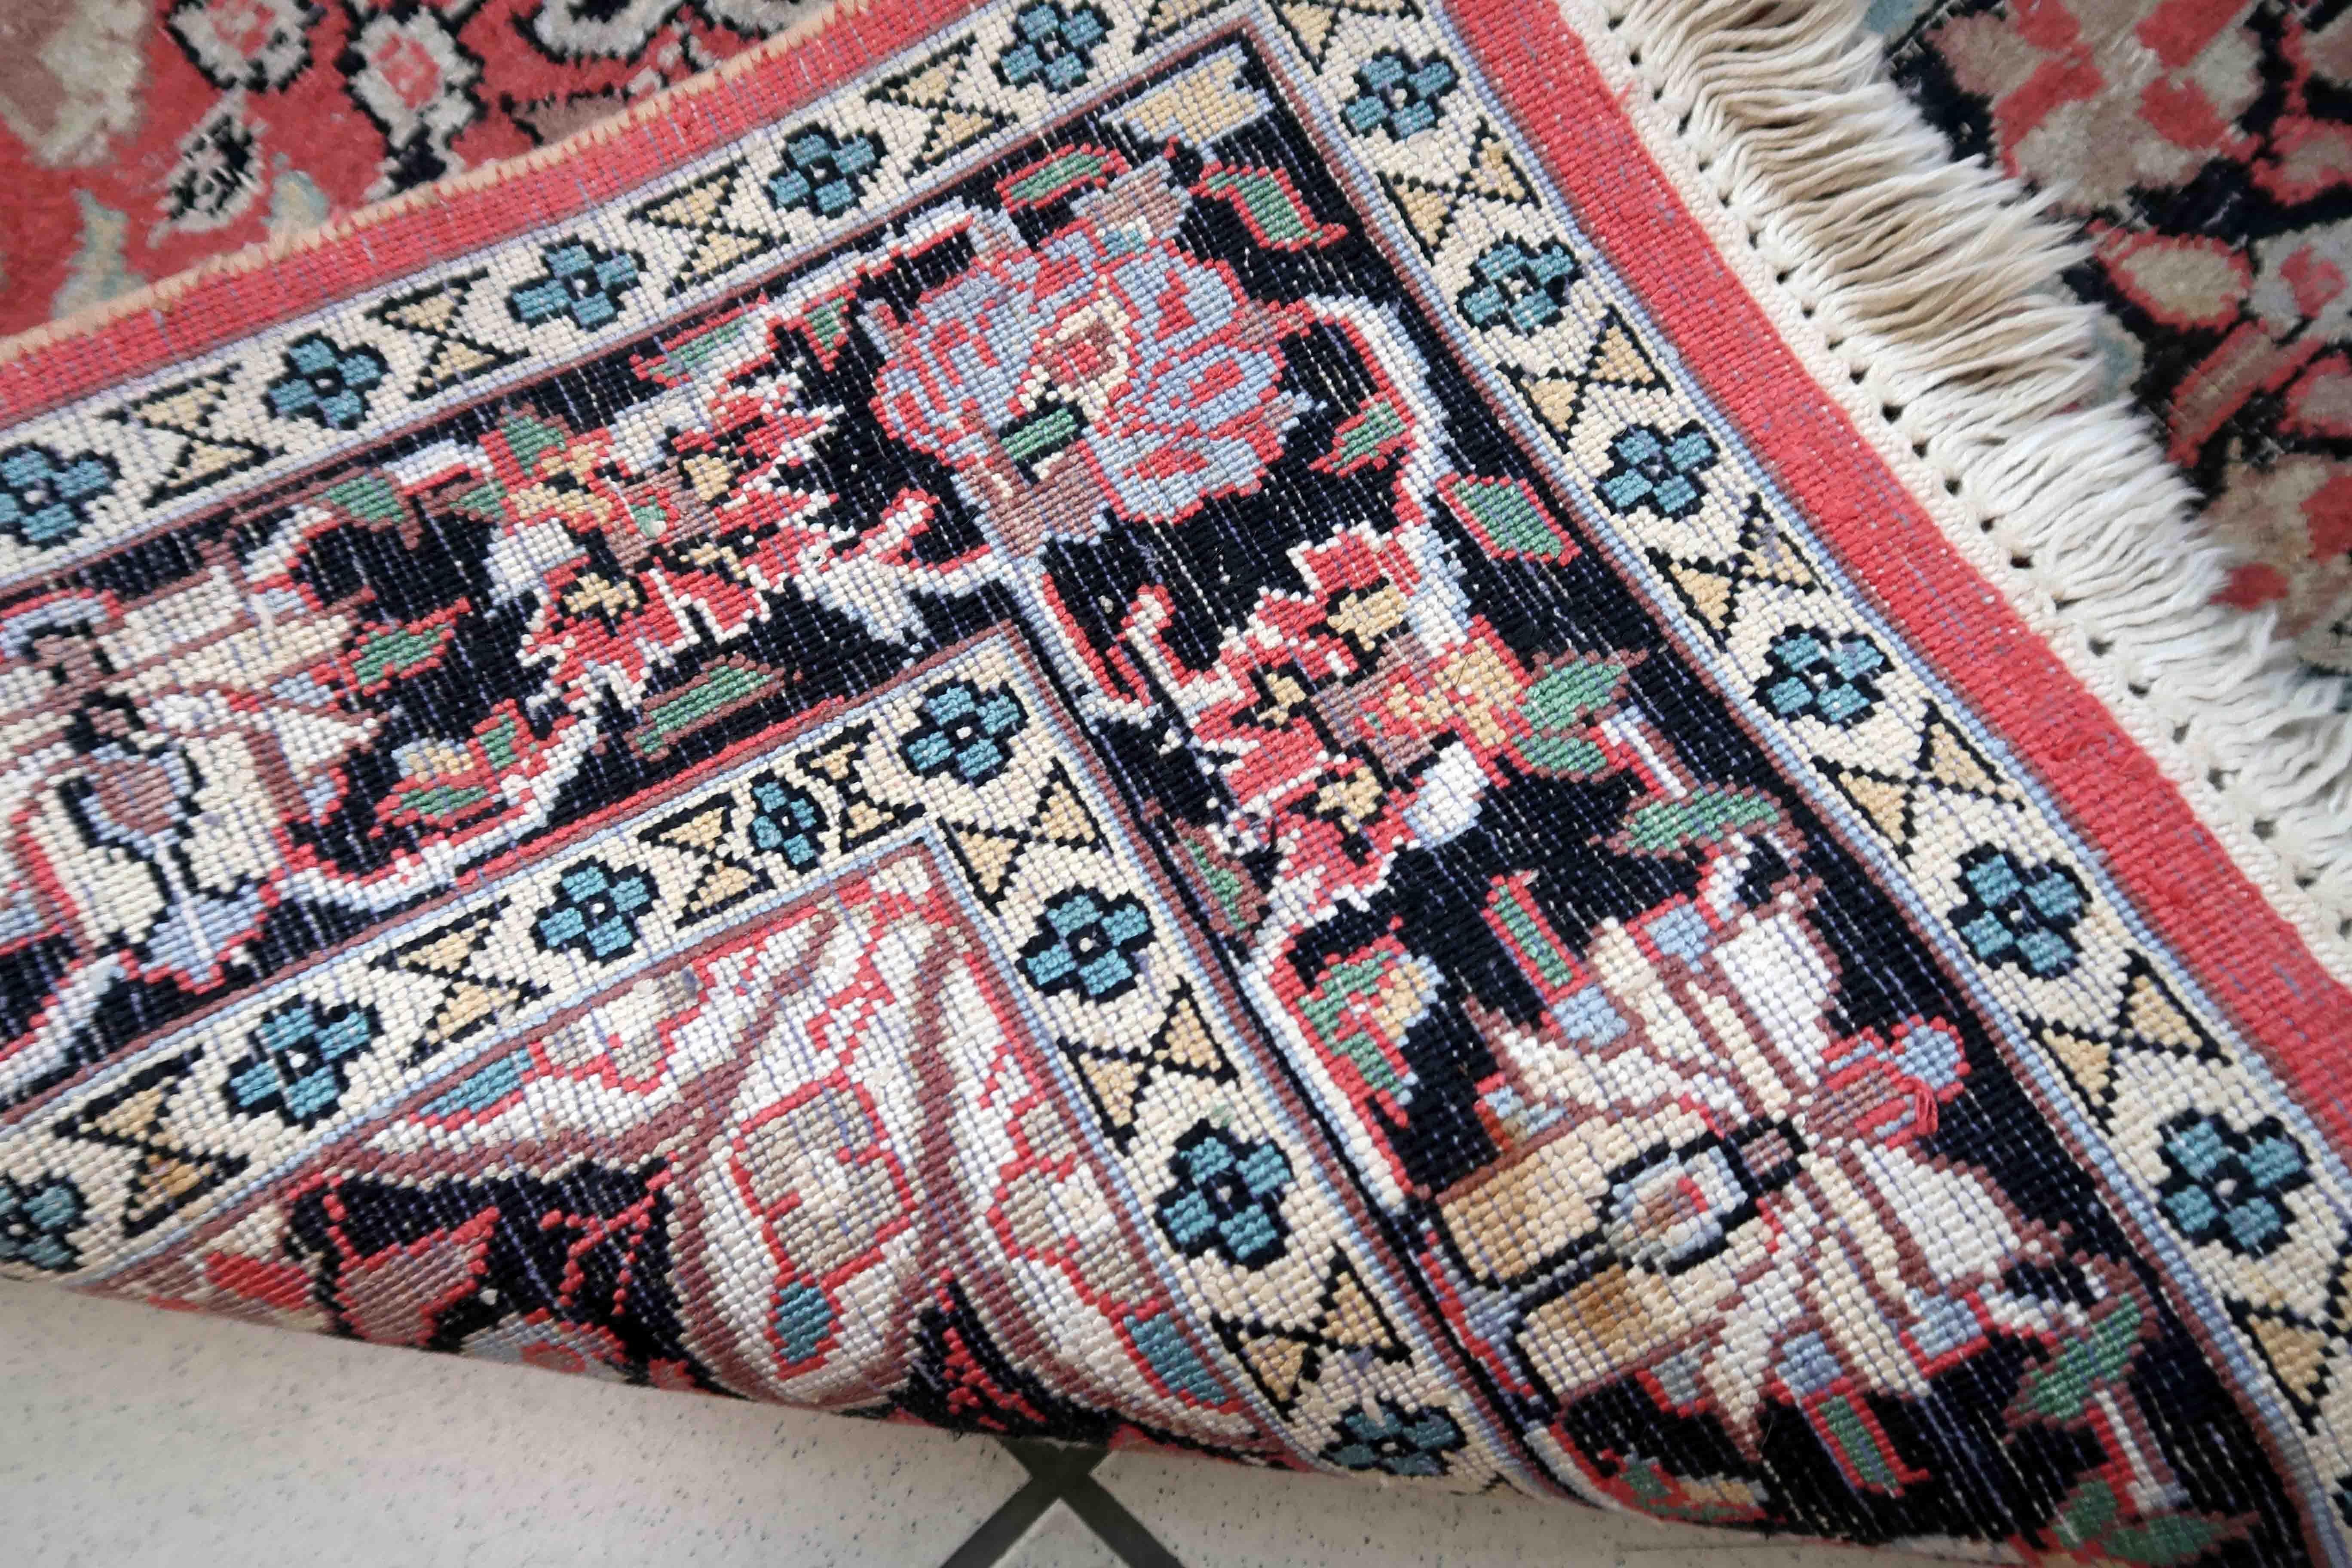 Handgefertigter alter persischer Täbriz-Teppich aus Kaschmirwolle. Der Teppich stammt aus dem Ende des 20. Jahrhunderts und ist in gutem Originalzustand. Der Teppich hat ein traditionelles Medaillonmuster in rosa und schwarzen Farben. Wie viele